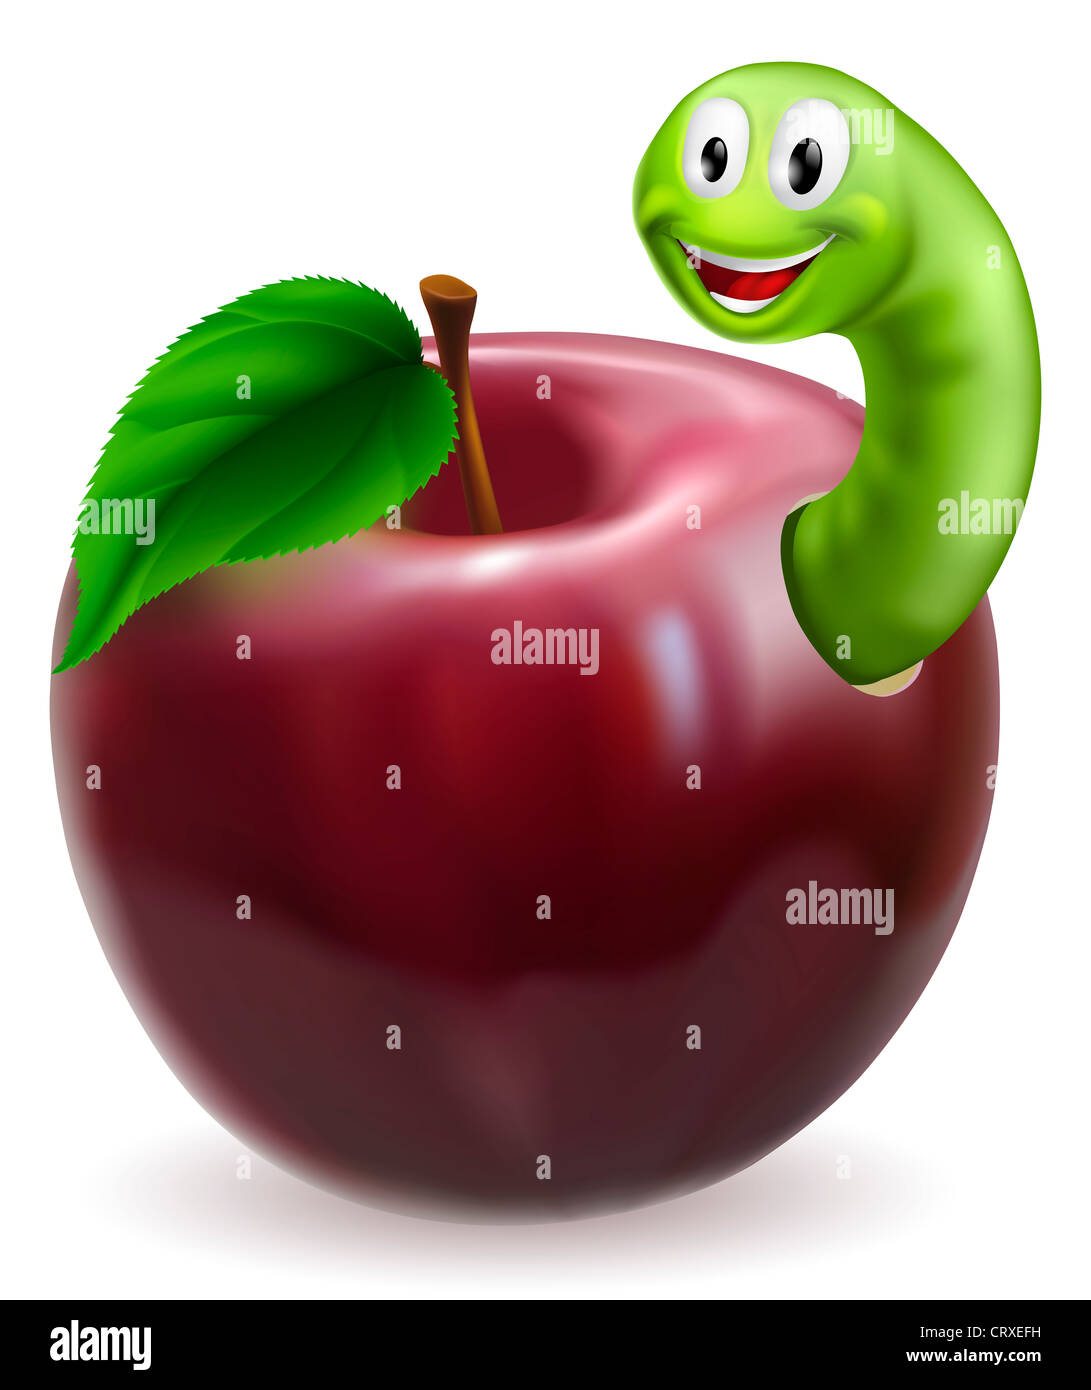 Abbildung eines niedlichen glücklich grüne Raupe oder Wurm aus einem saftigen roten Apfel Stockfoto